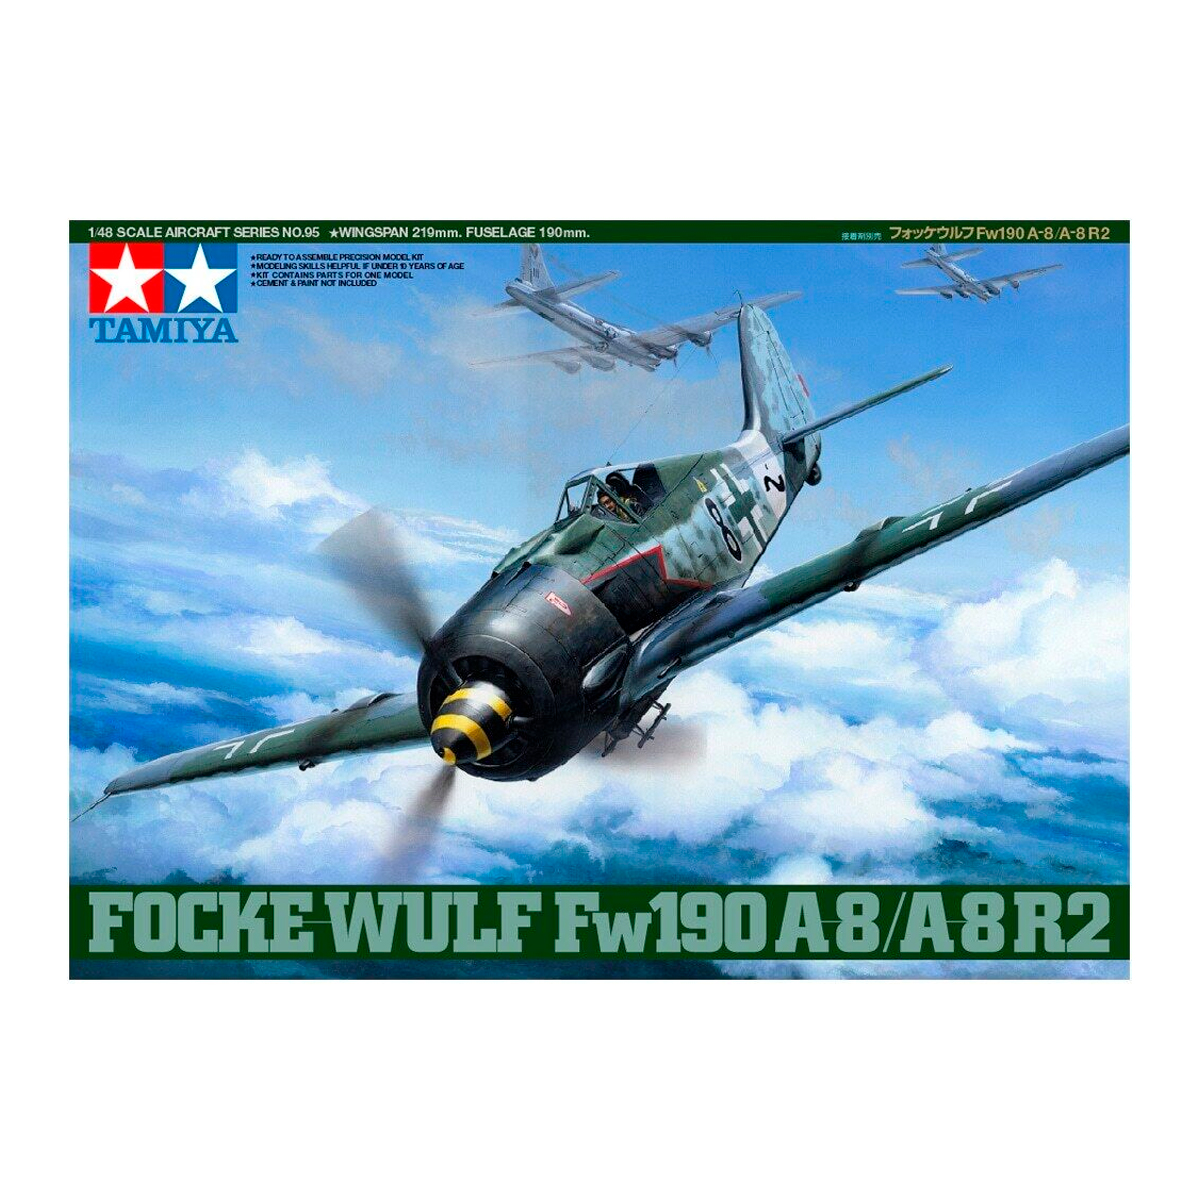 1/48 Focke-Wulf Fw190 A-8/A-8 R2 100